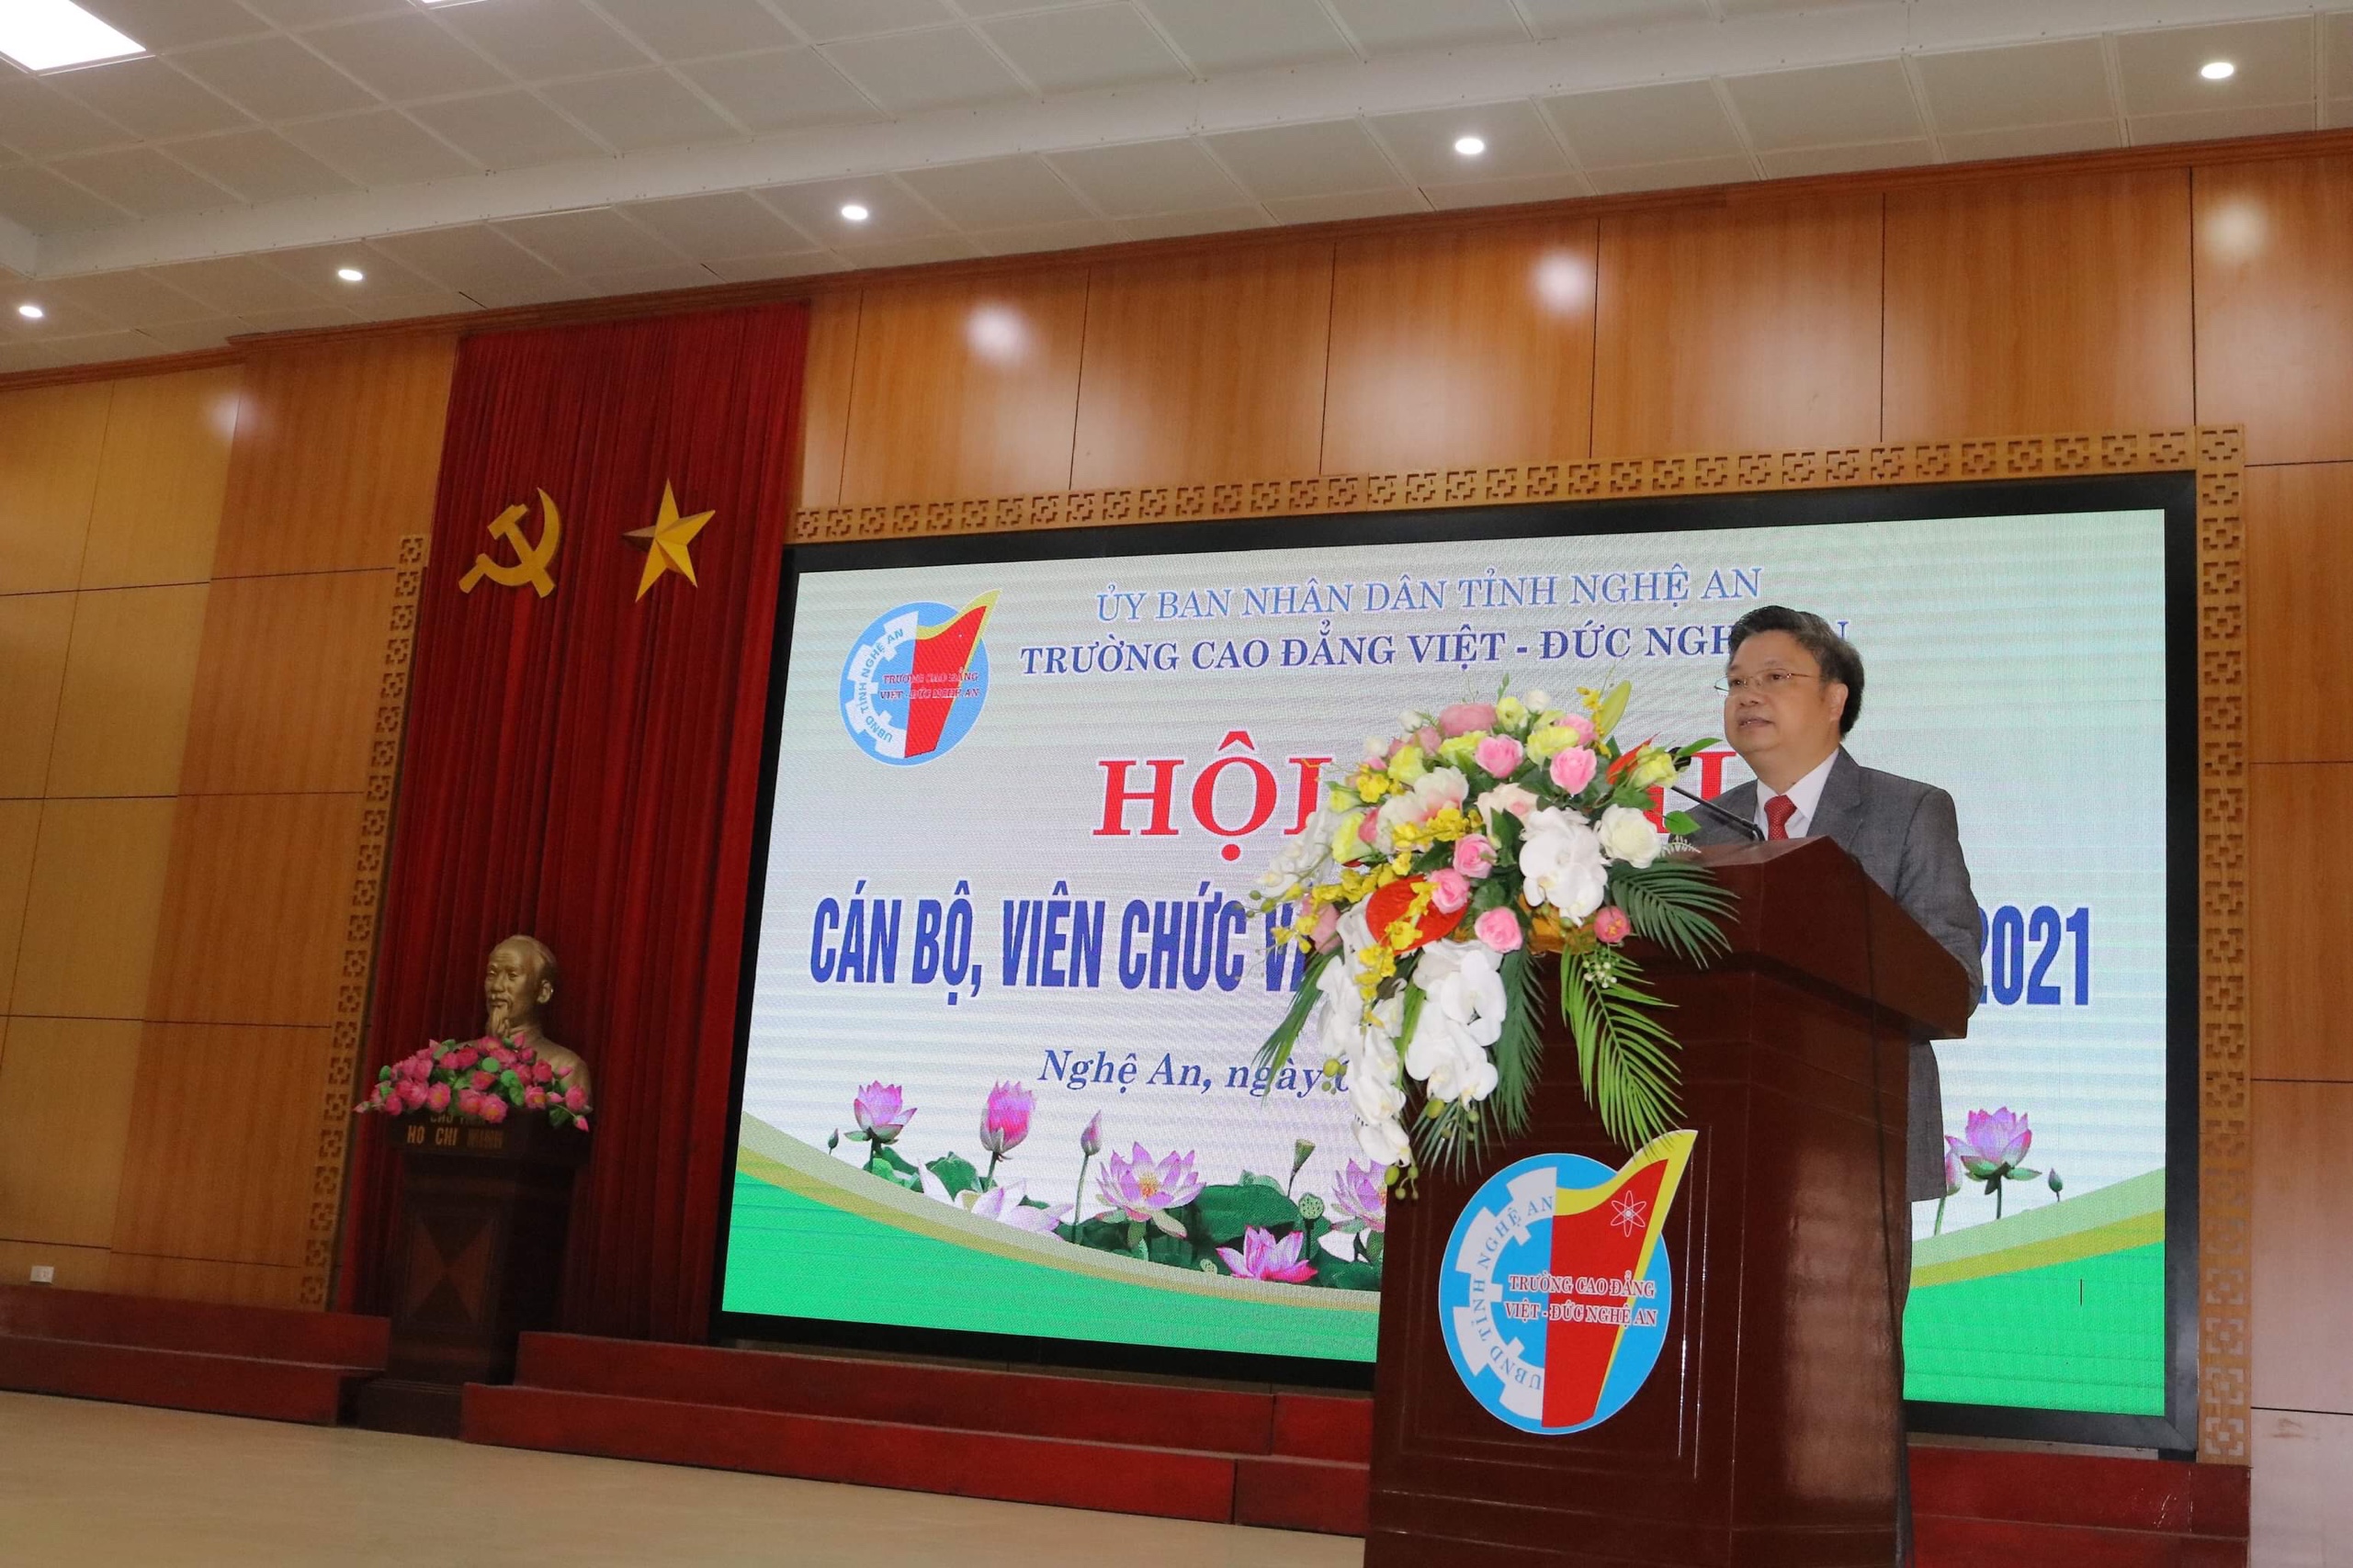 Trường Cao đẳng Việt - Đức Nghệ An tổ chức Hội nghị cán bộ, viên chức và người lao động năm 2021